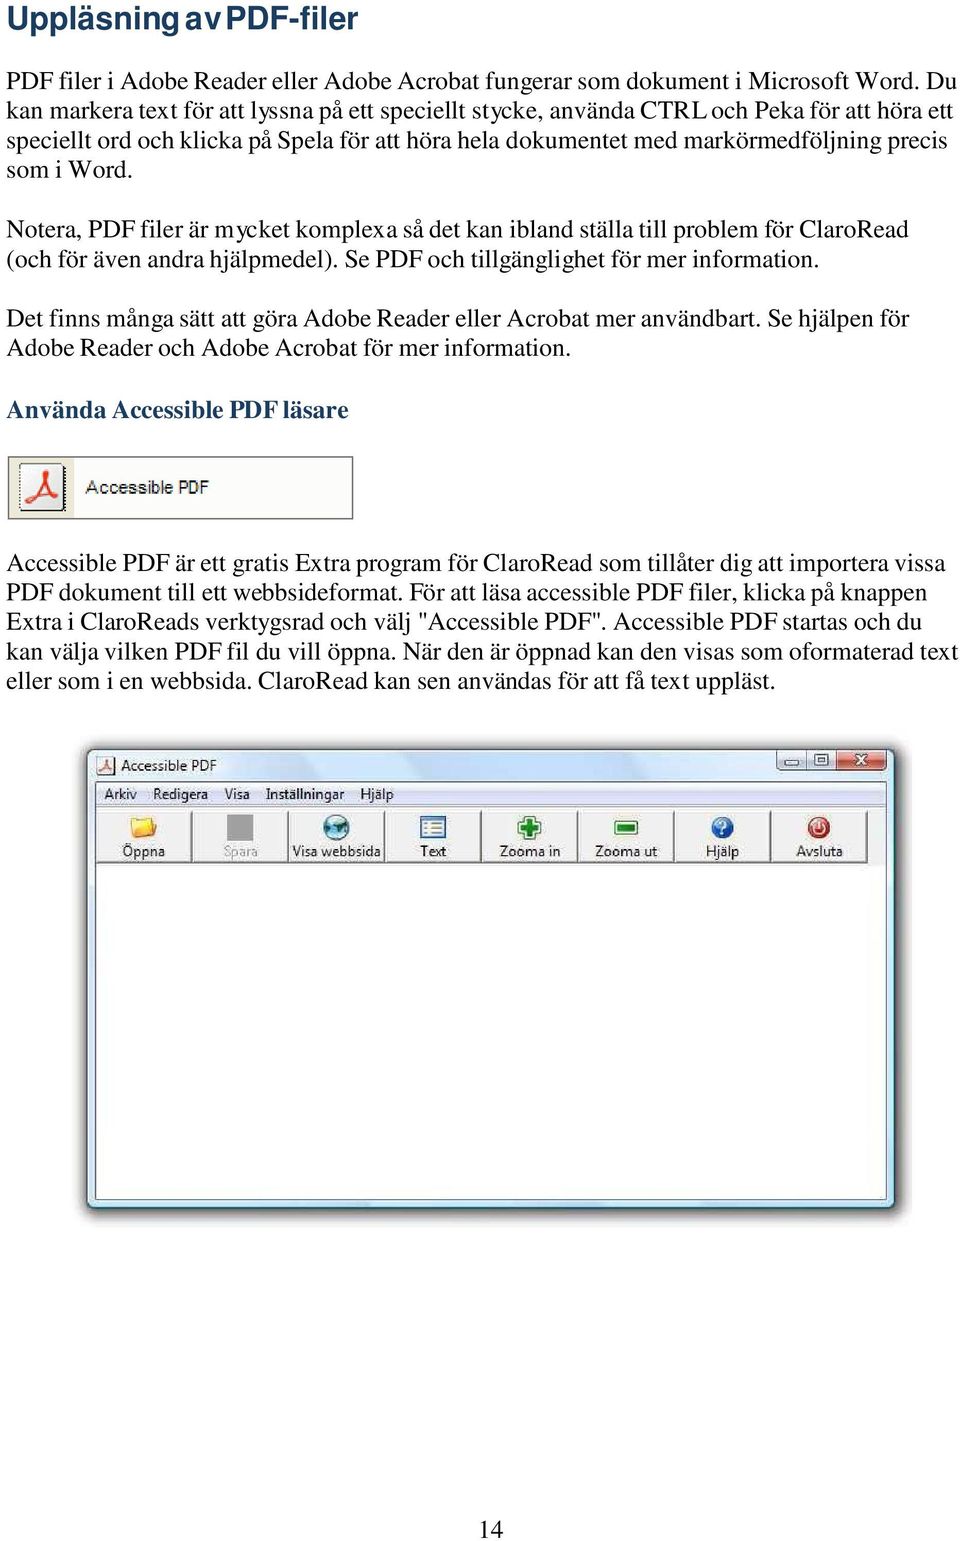 Word. Notera, PDF filer är mycket komplexa så det kan ibland ställa till problem för ClaroRead (och för även andra hjälpmedel). Se PDF och tillgänglighet för mer information.